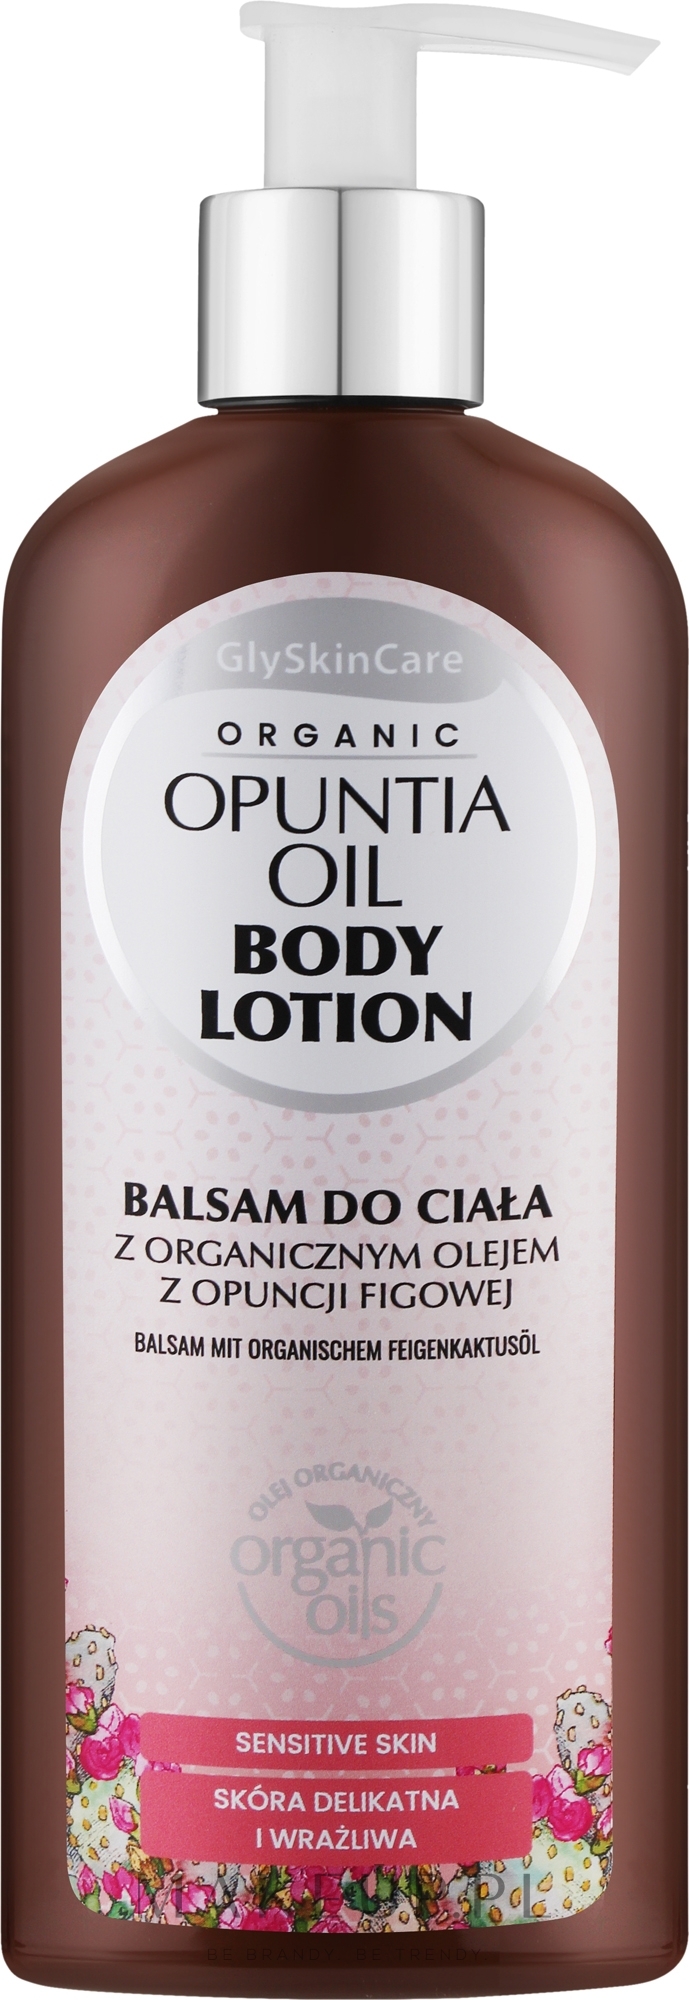 Balsam do ciała z olejem z opuncji figowej - GlySkinCare Opuntia Oil Body Lotion — Zdjęcie 250 ml